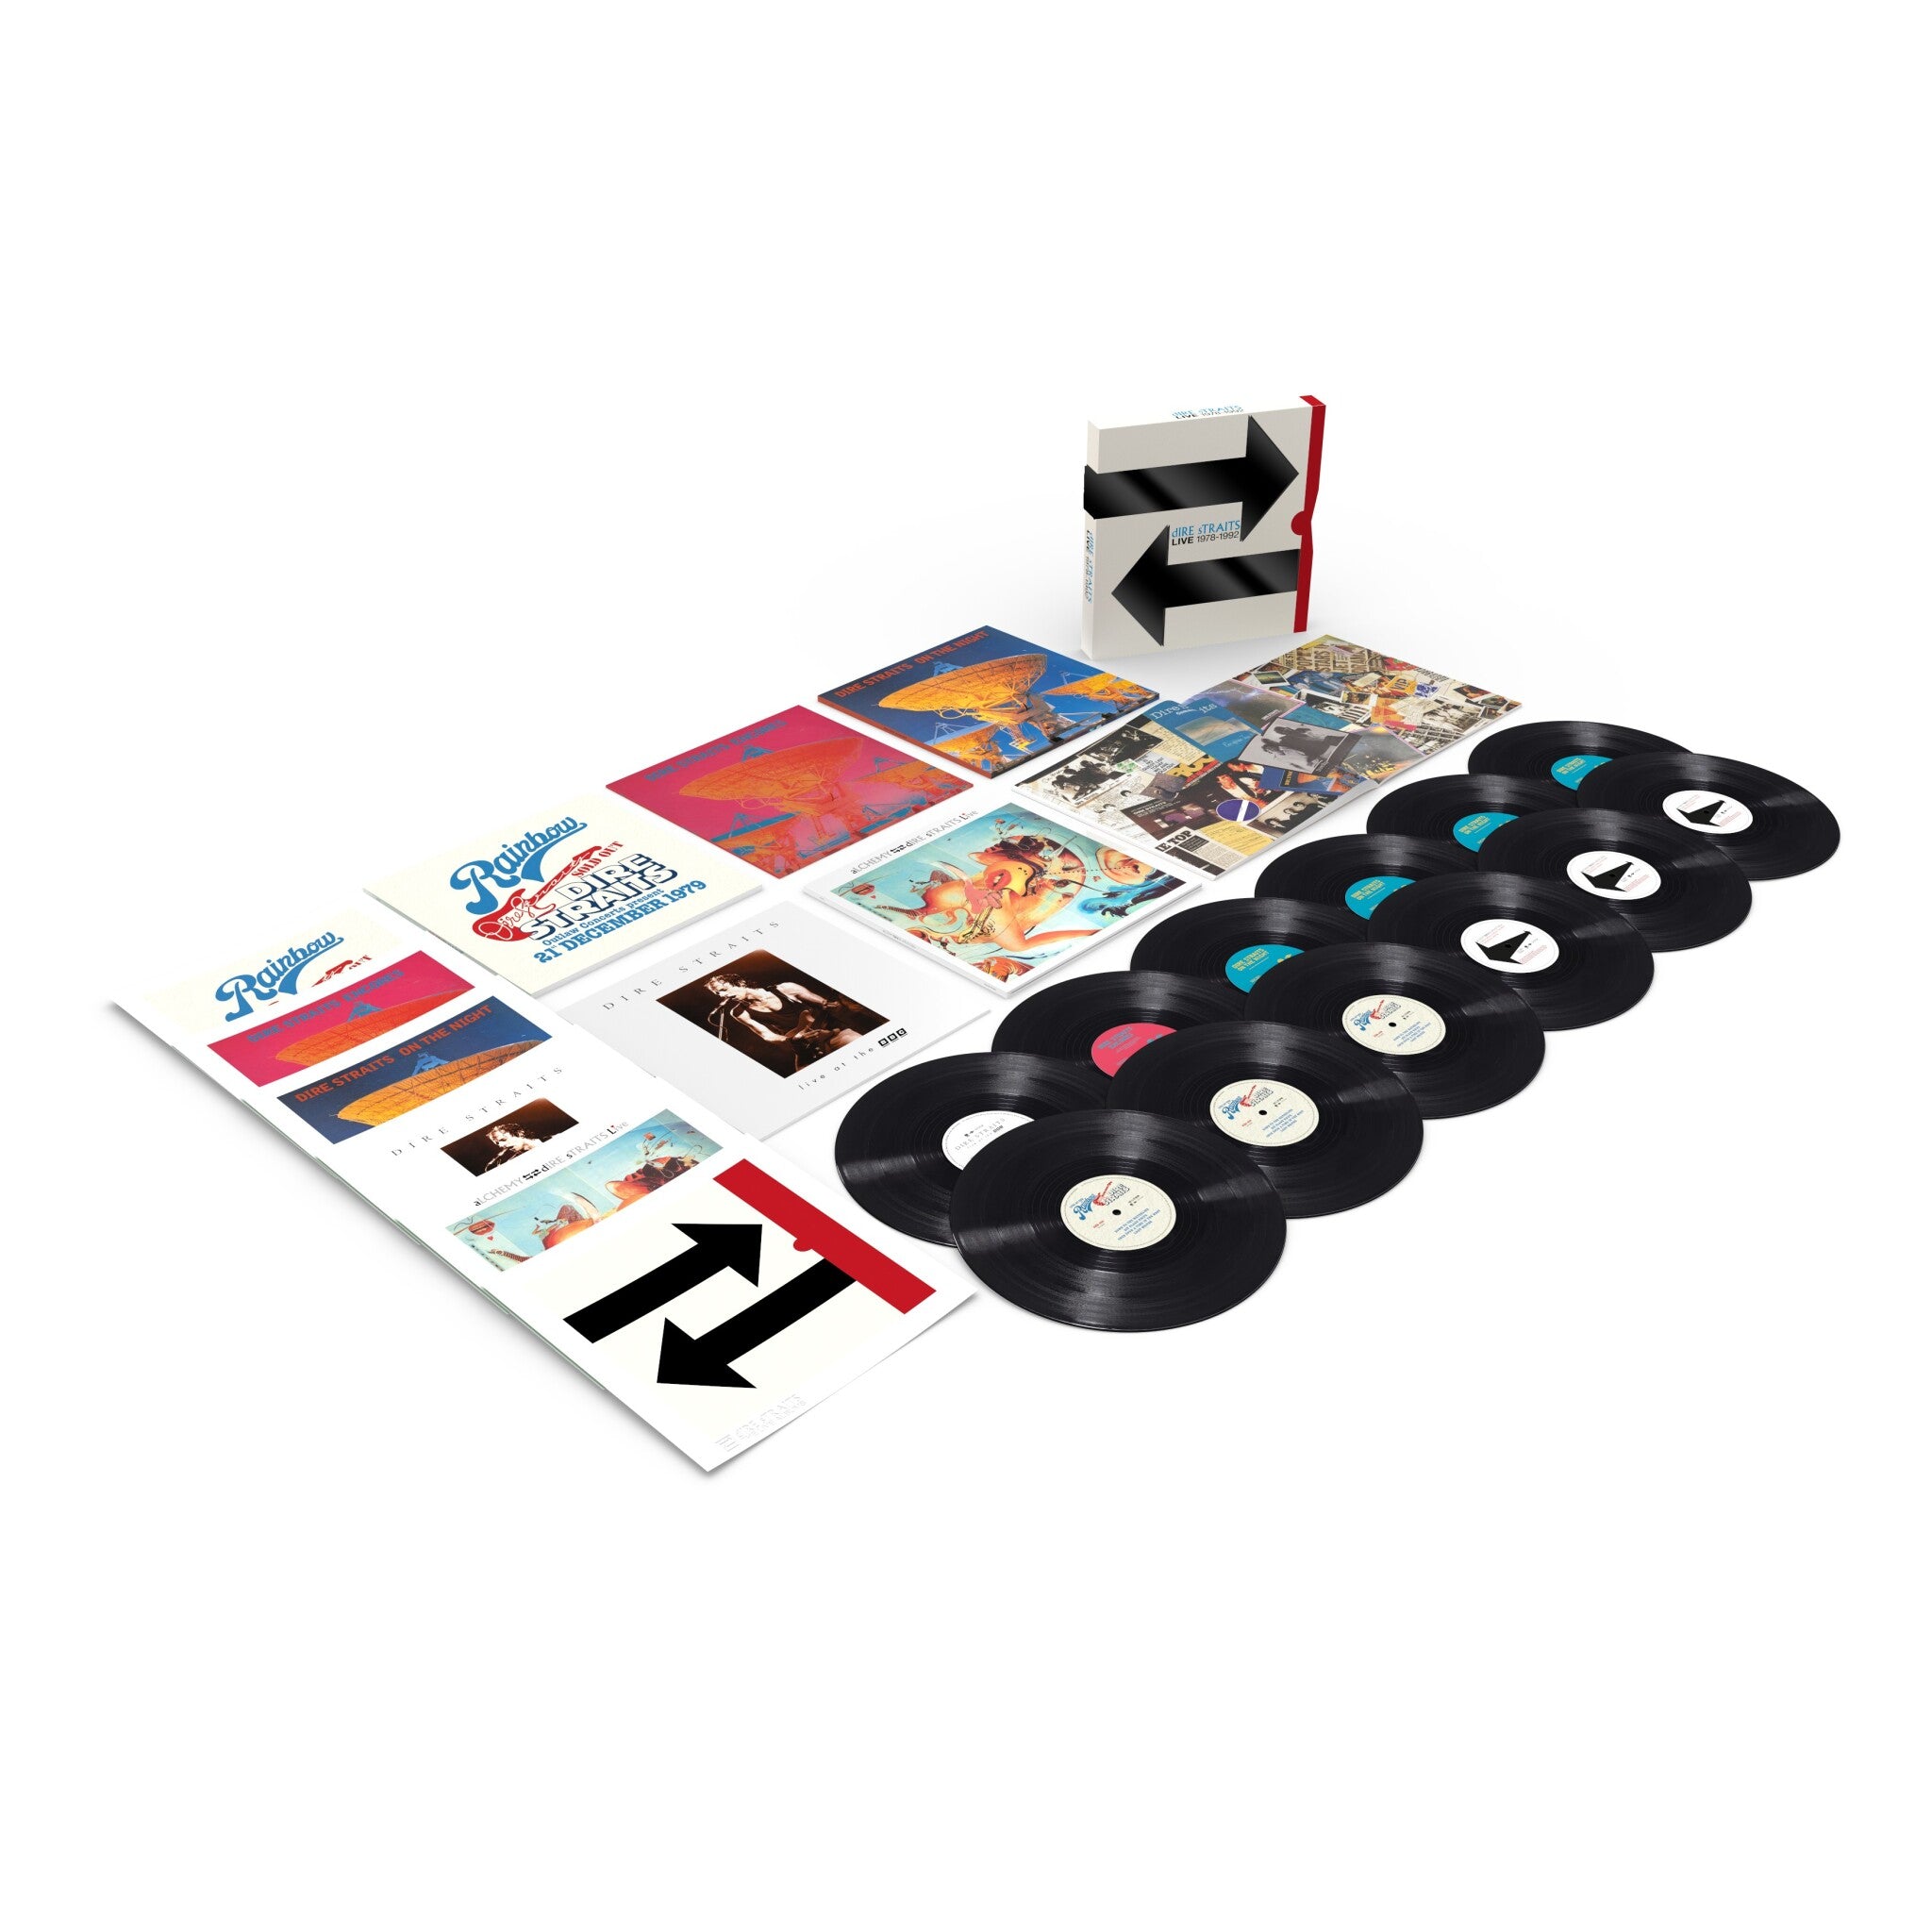 DIRE STRAITS - The Live Albums: 1978-1992 - 12LP - Vinyl Box Set